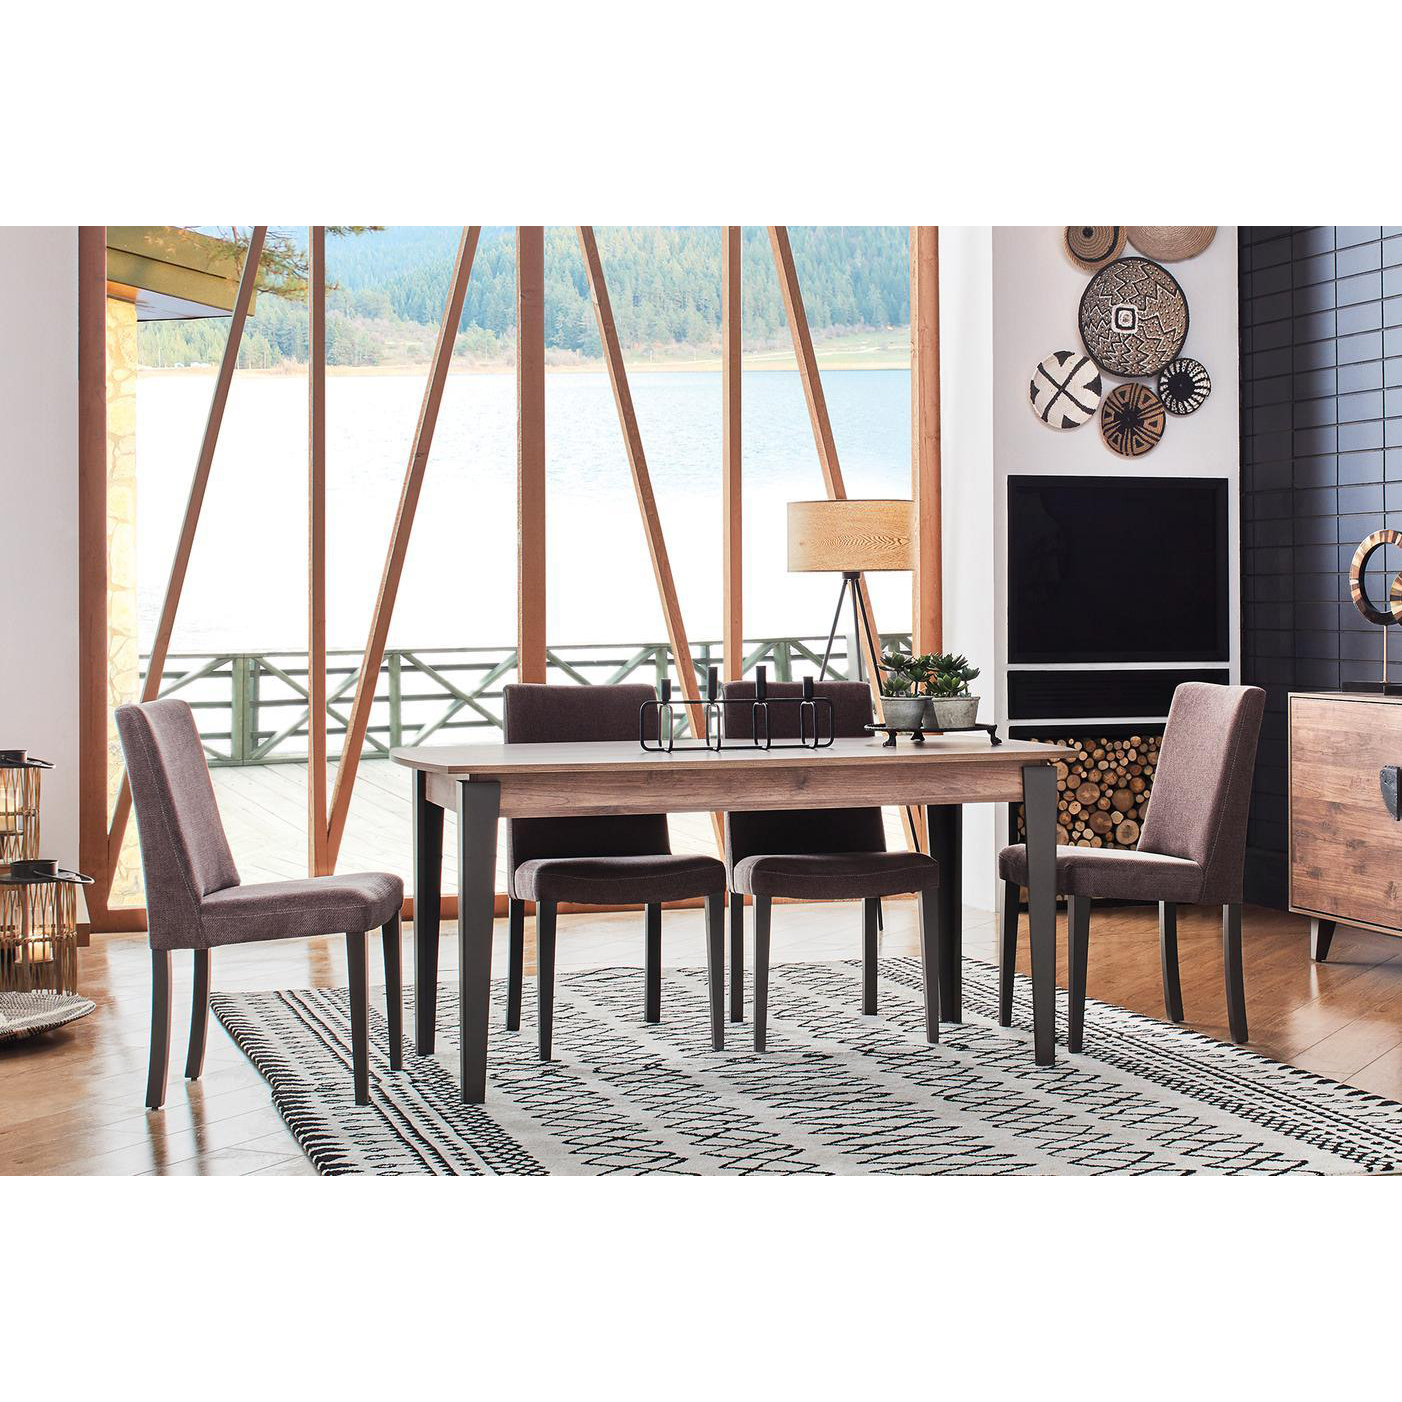 Стол обеденный Enza Home Orlando, прямоугольный, размер 160х90х76 см (EH24162)EH24162